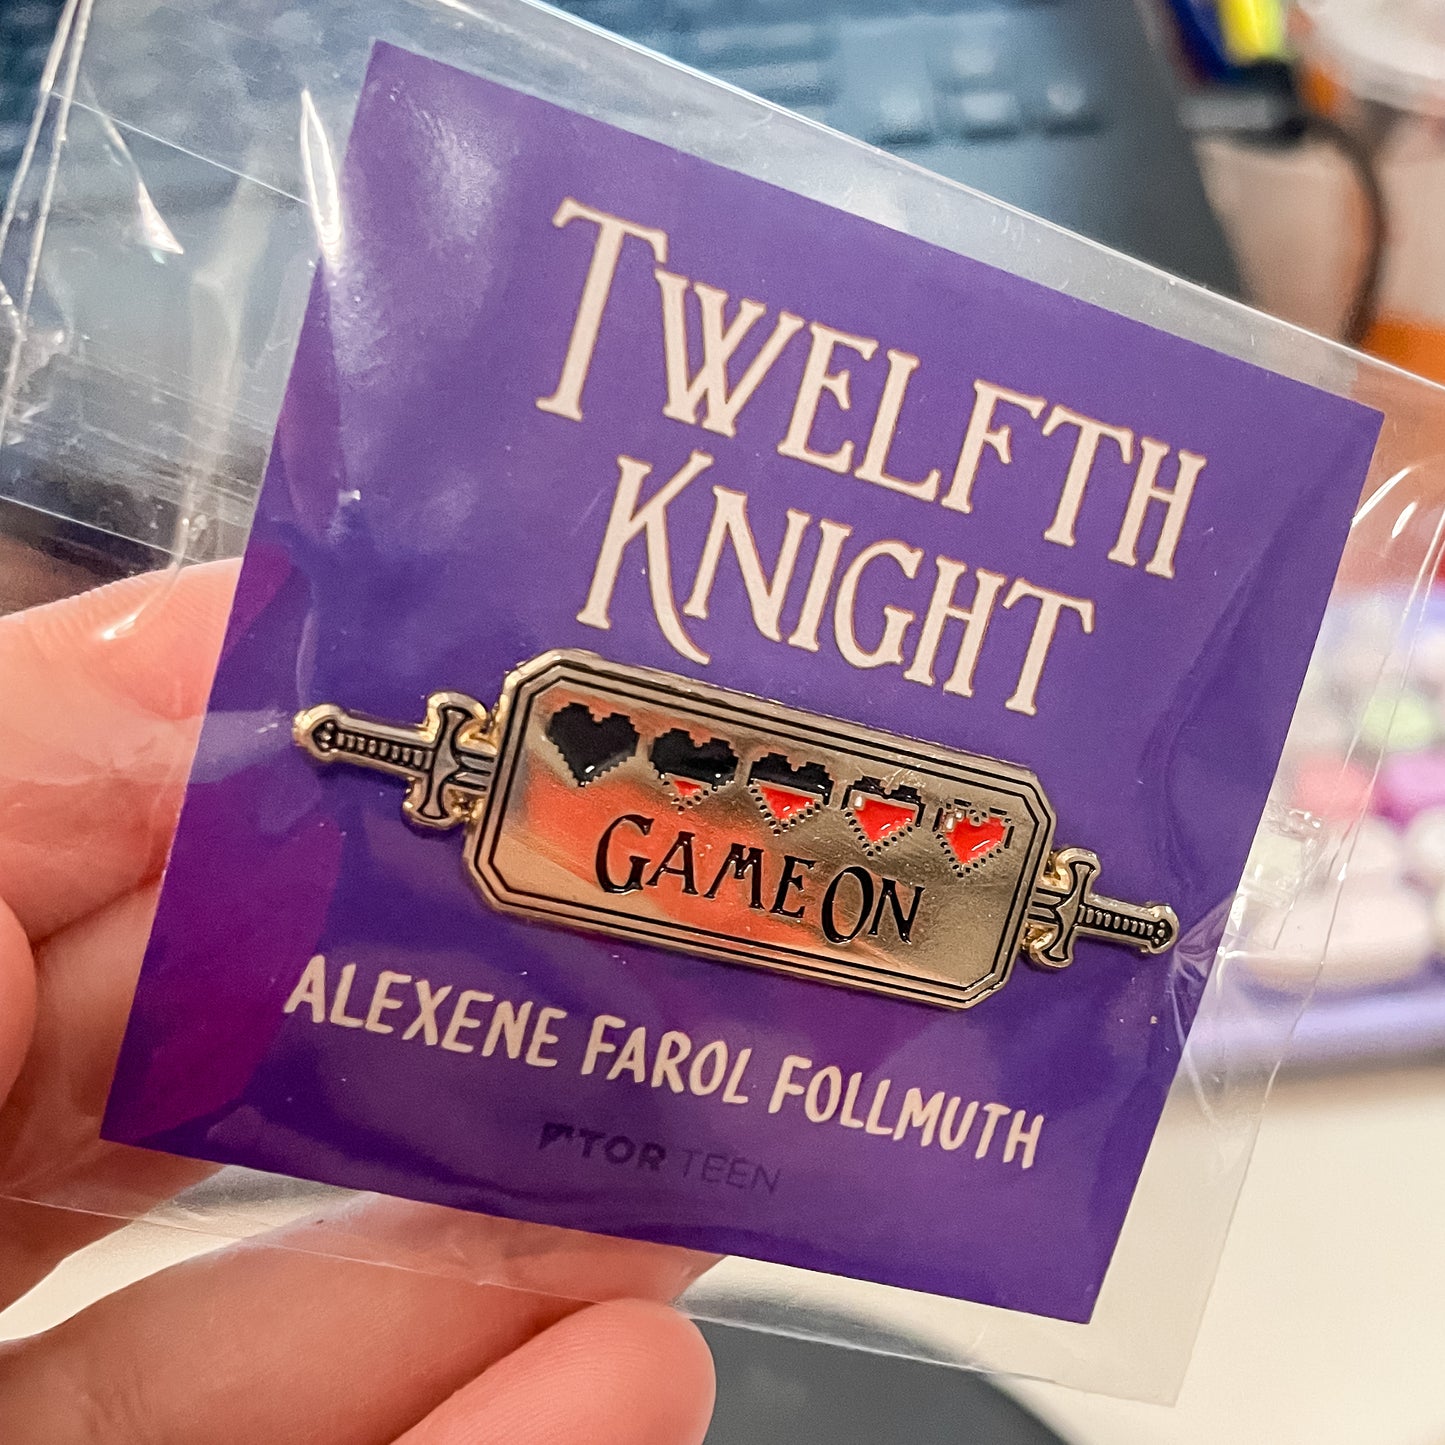 Twelfth Knight by Alexene Farol Follmuth (OUT MAY 28TH)